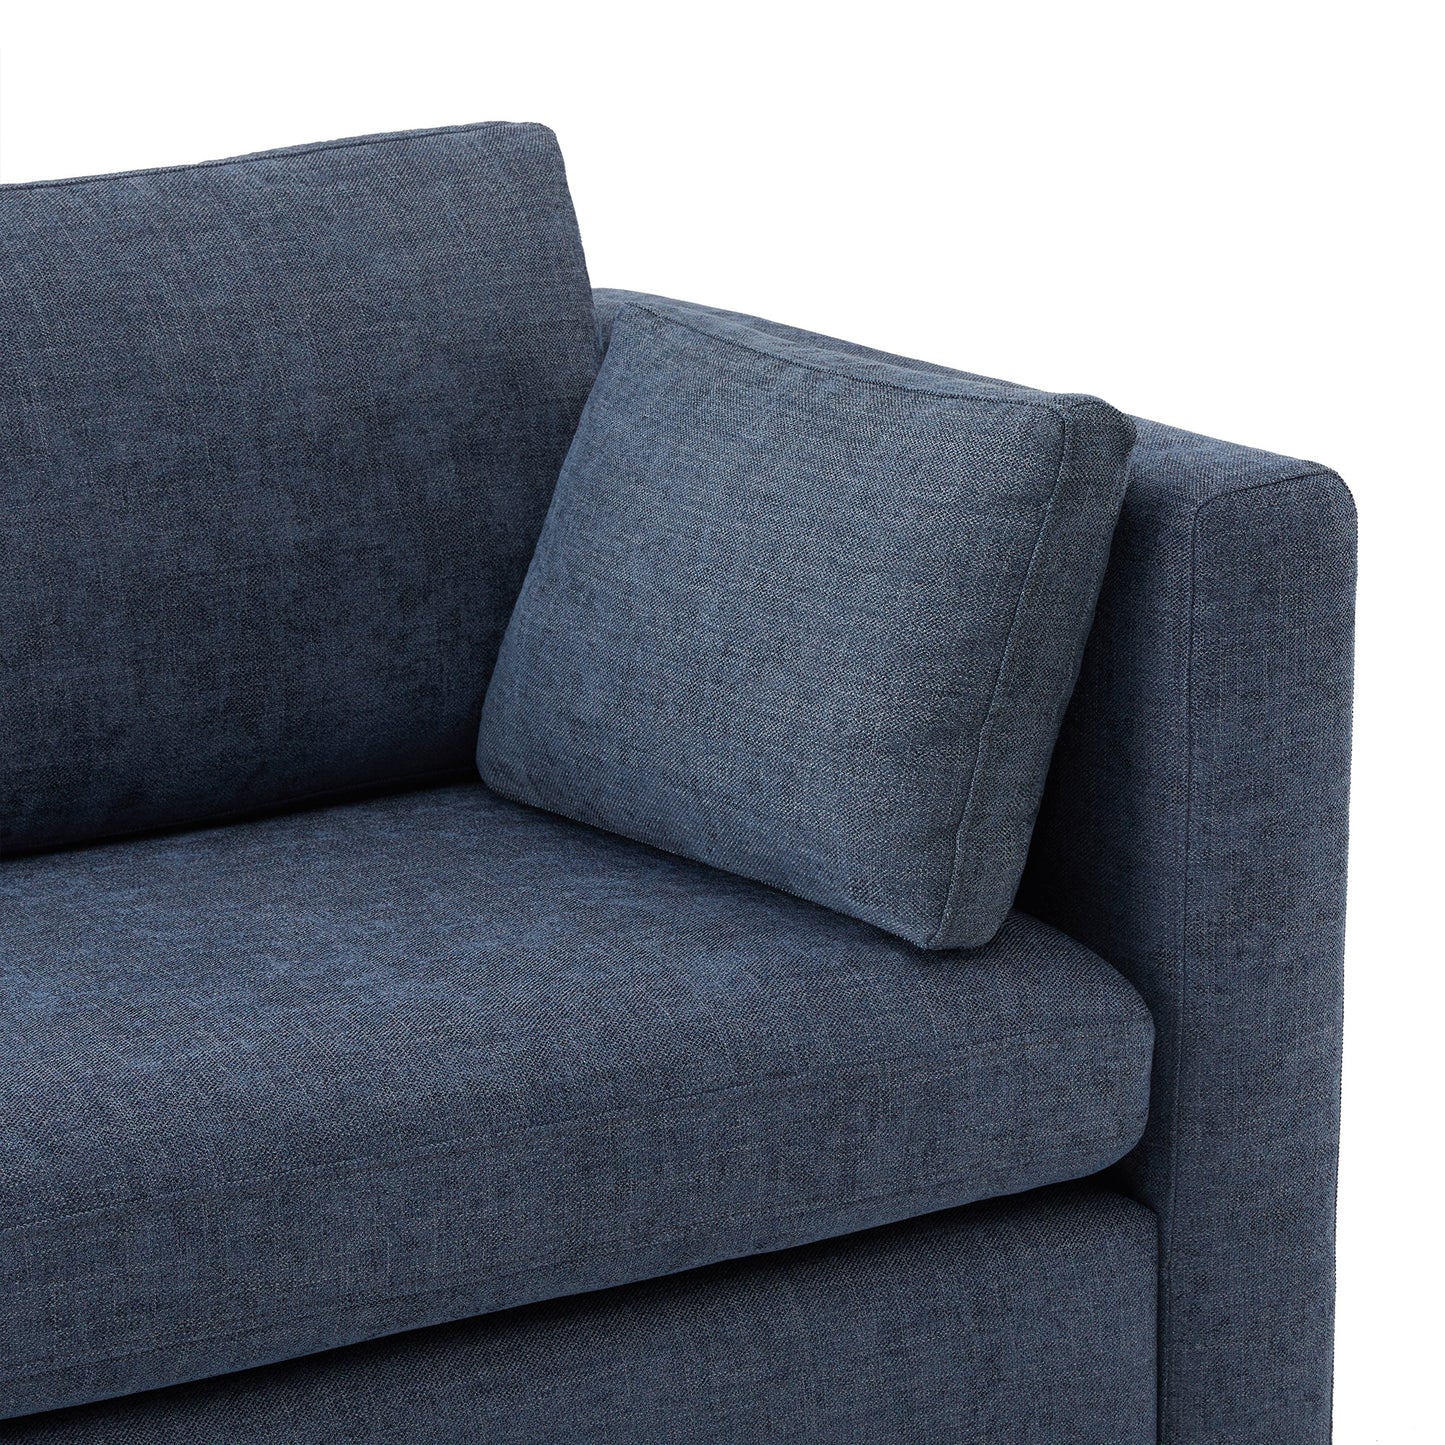 CHITA LIVING-Delaney 2-Piece Modular Sofa (78'')-Sofas-Fabric-Blue-